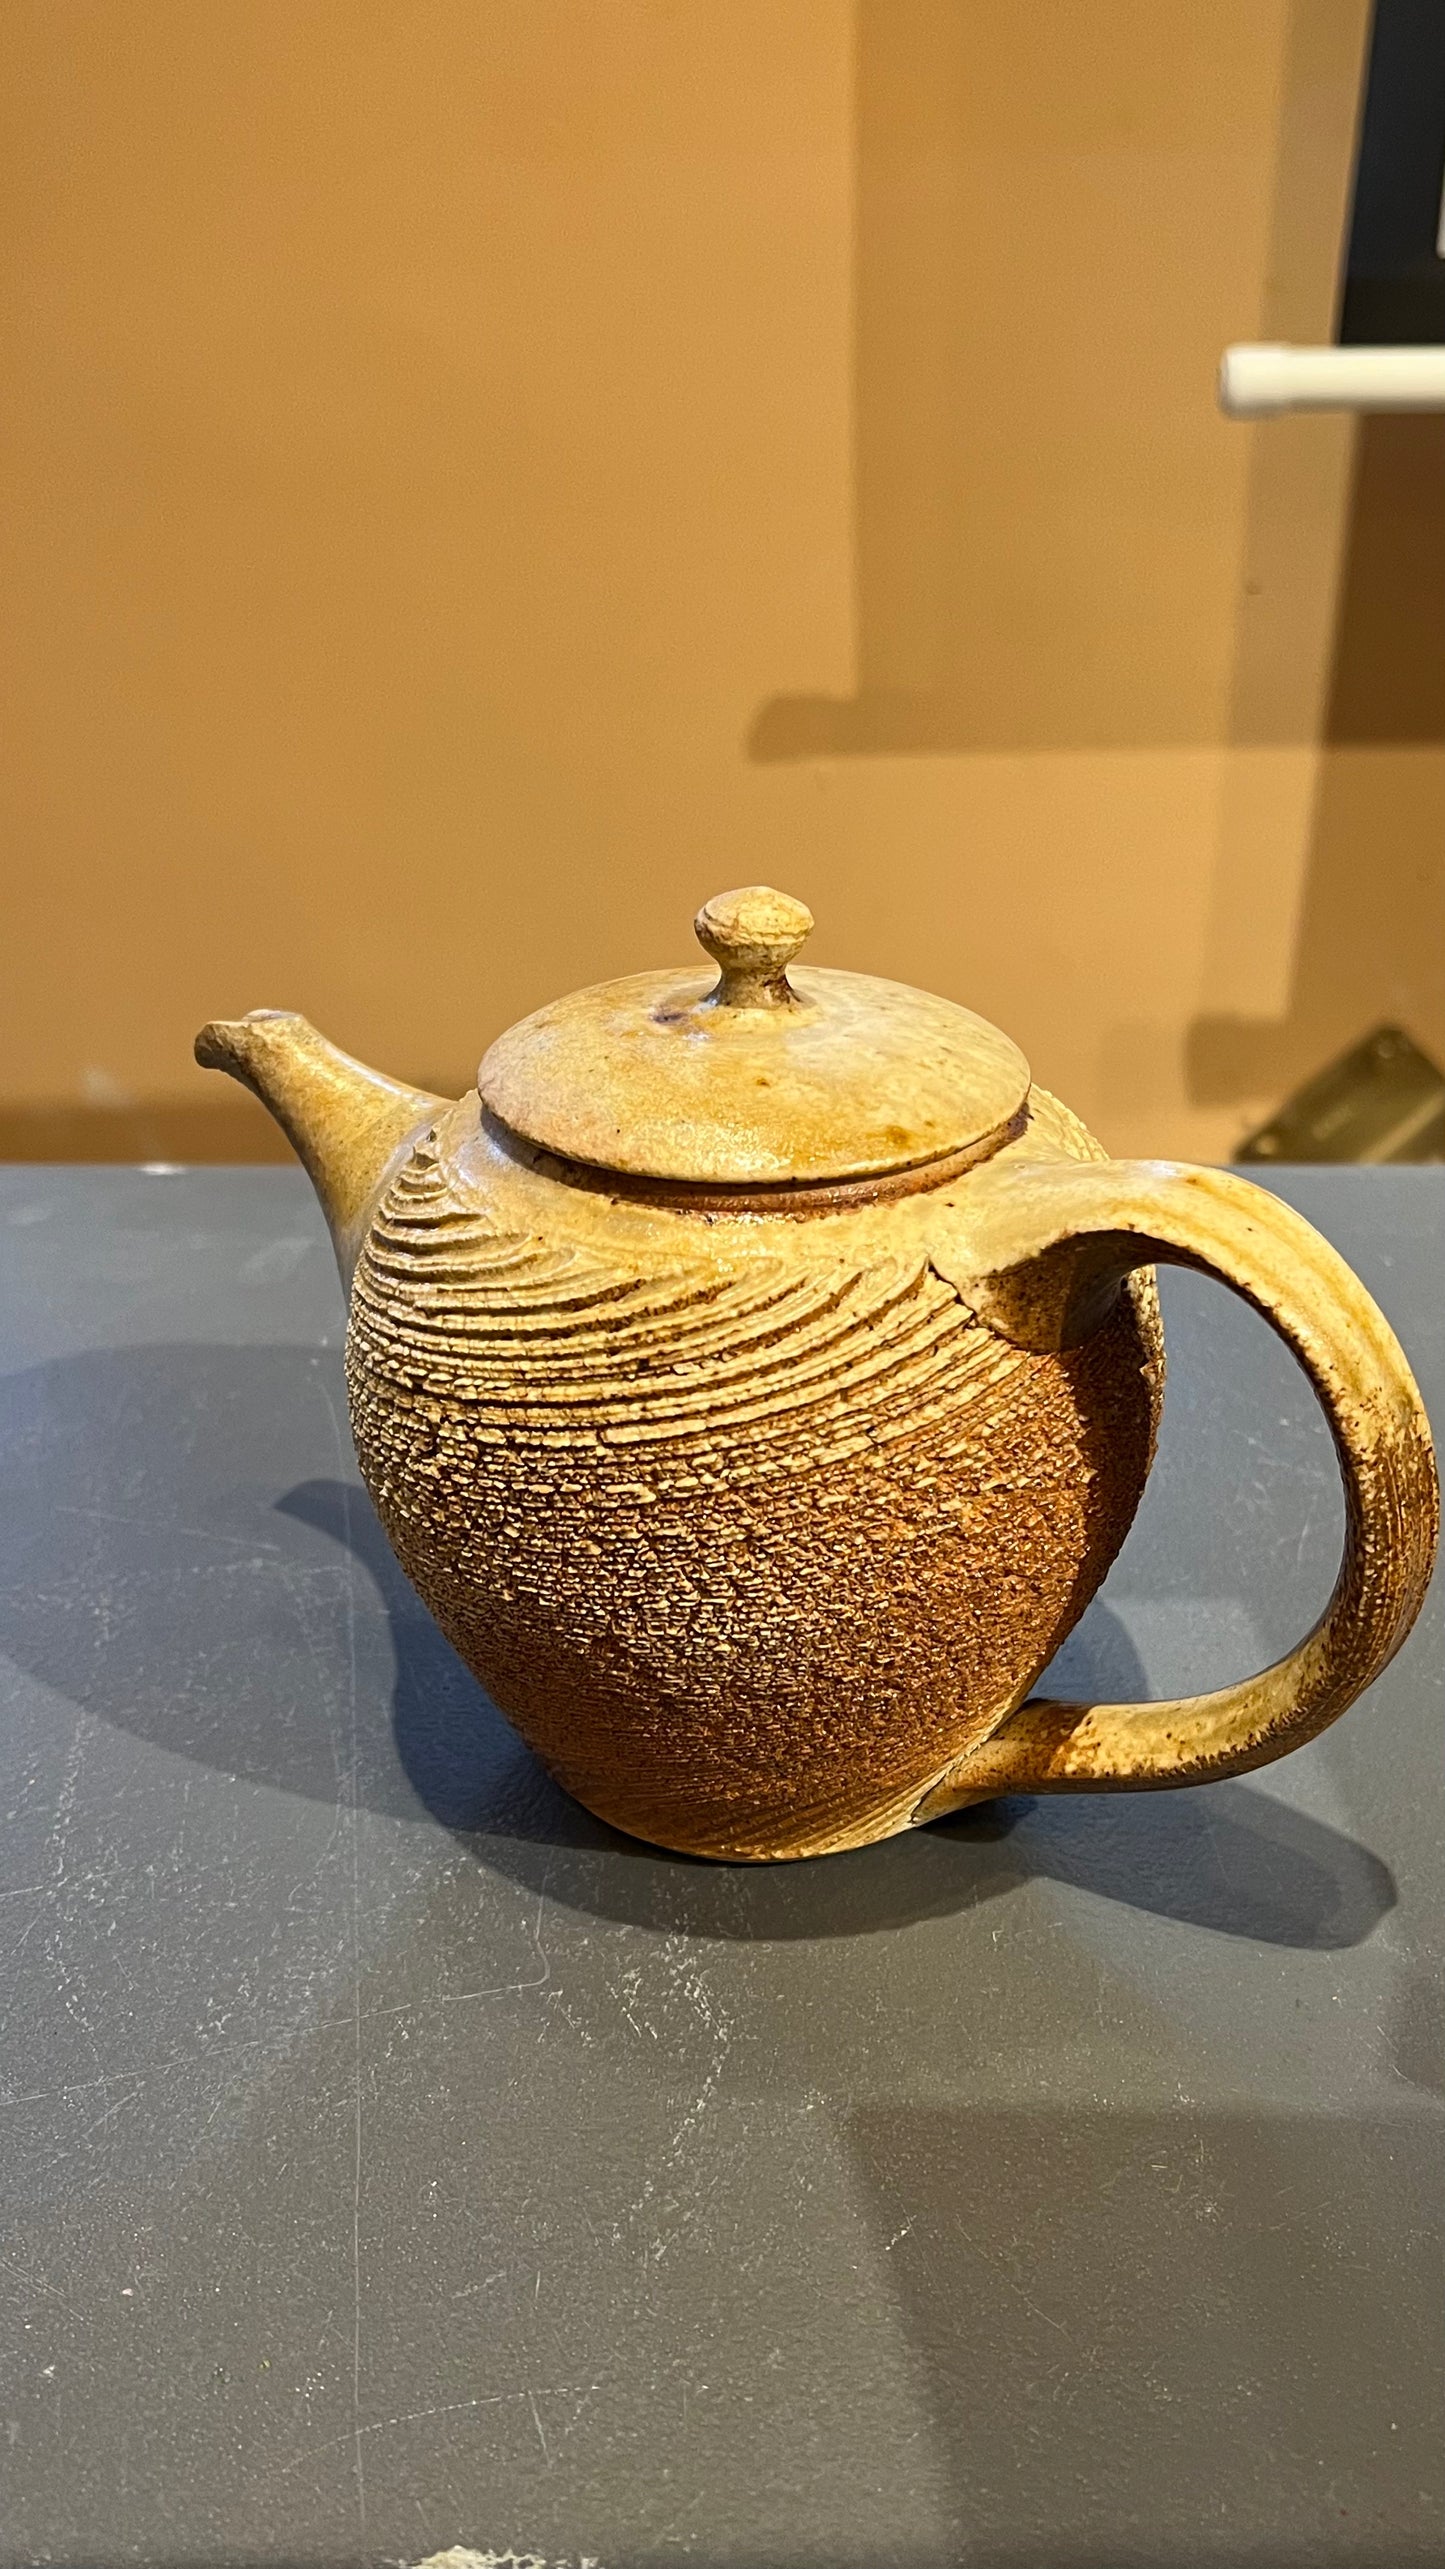 22. Spiral Teapot I